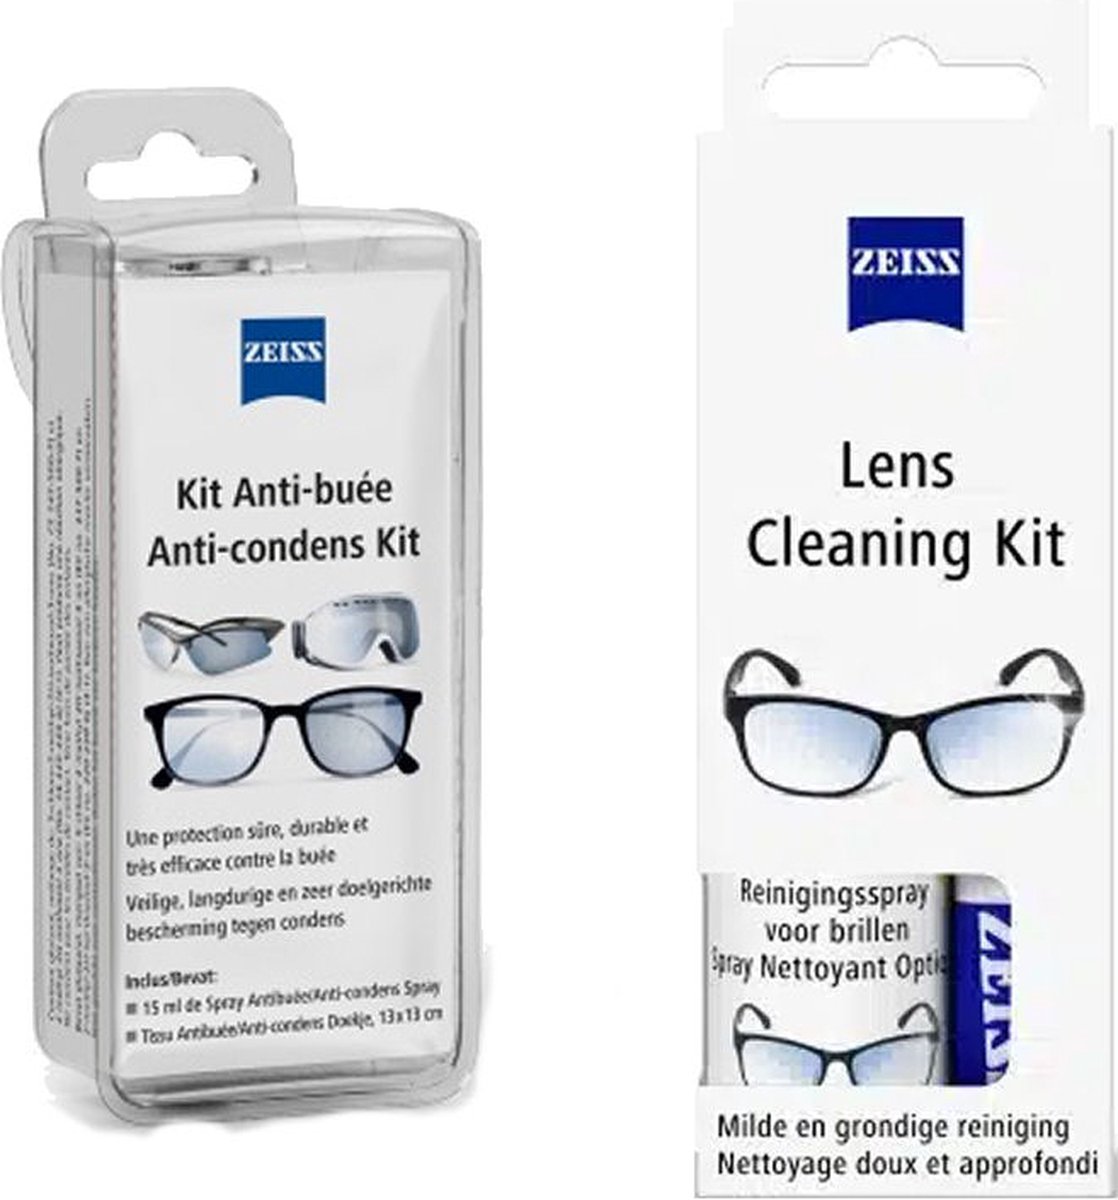 Zeiss Anti-condens en Reinigingsset voor brillen